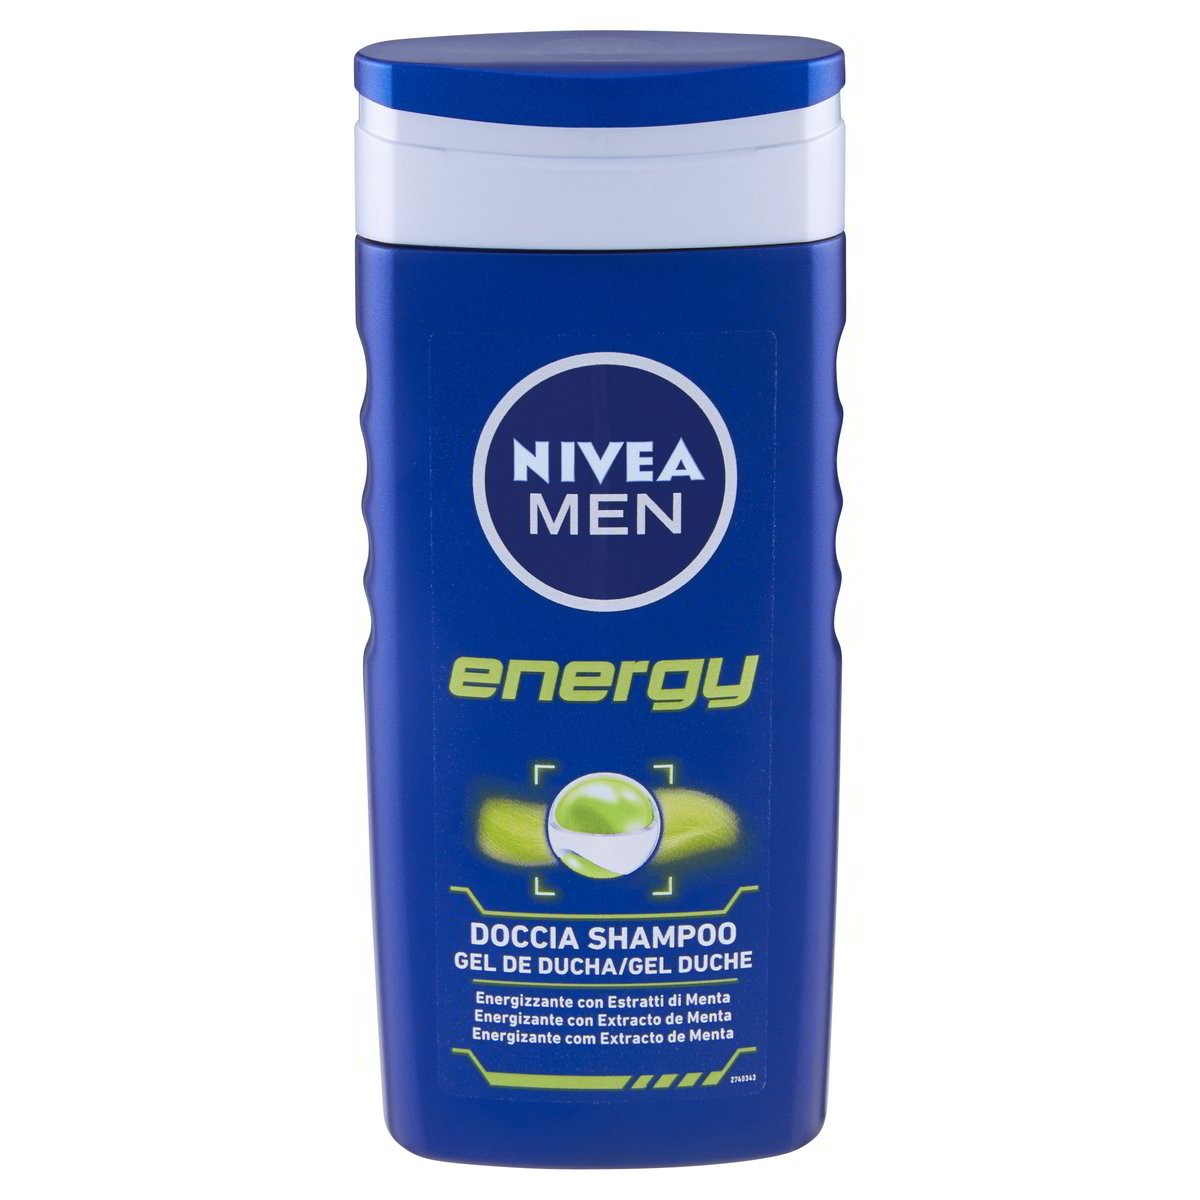 Nivea Men Doccia Shampoo Energy